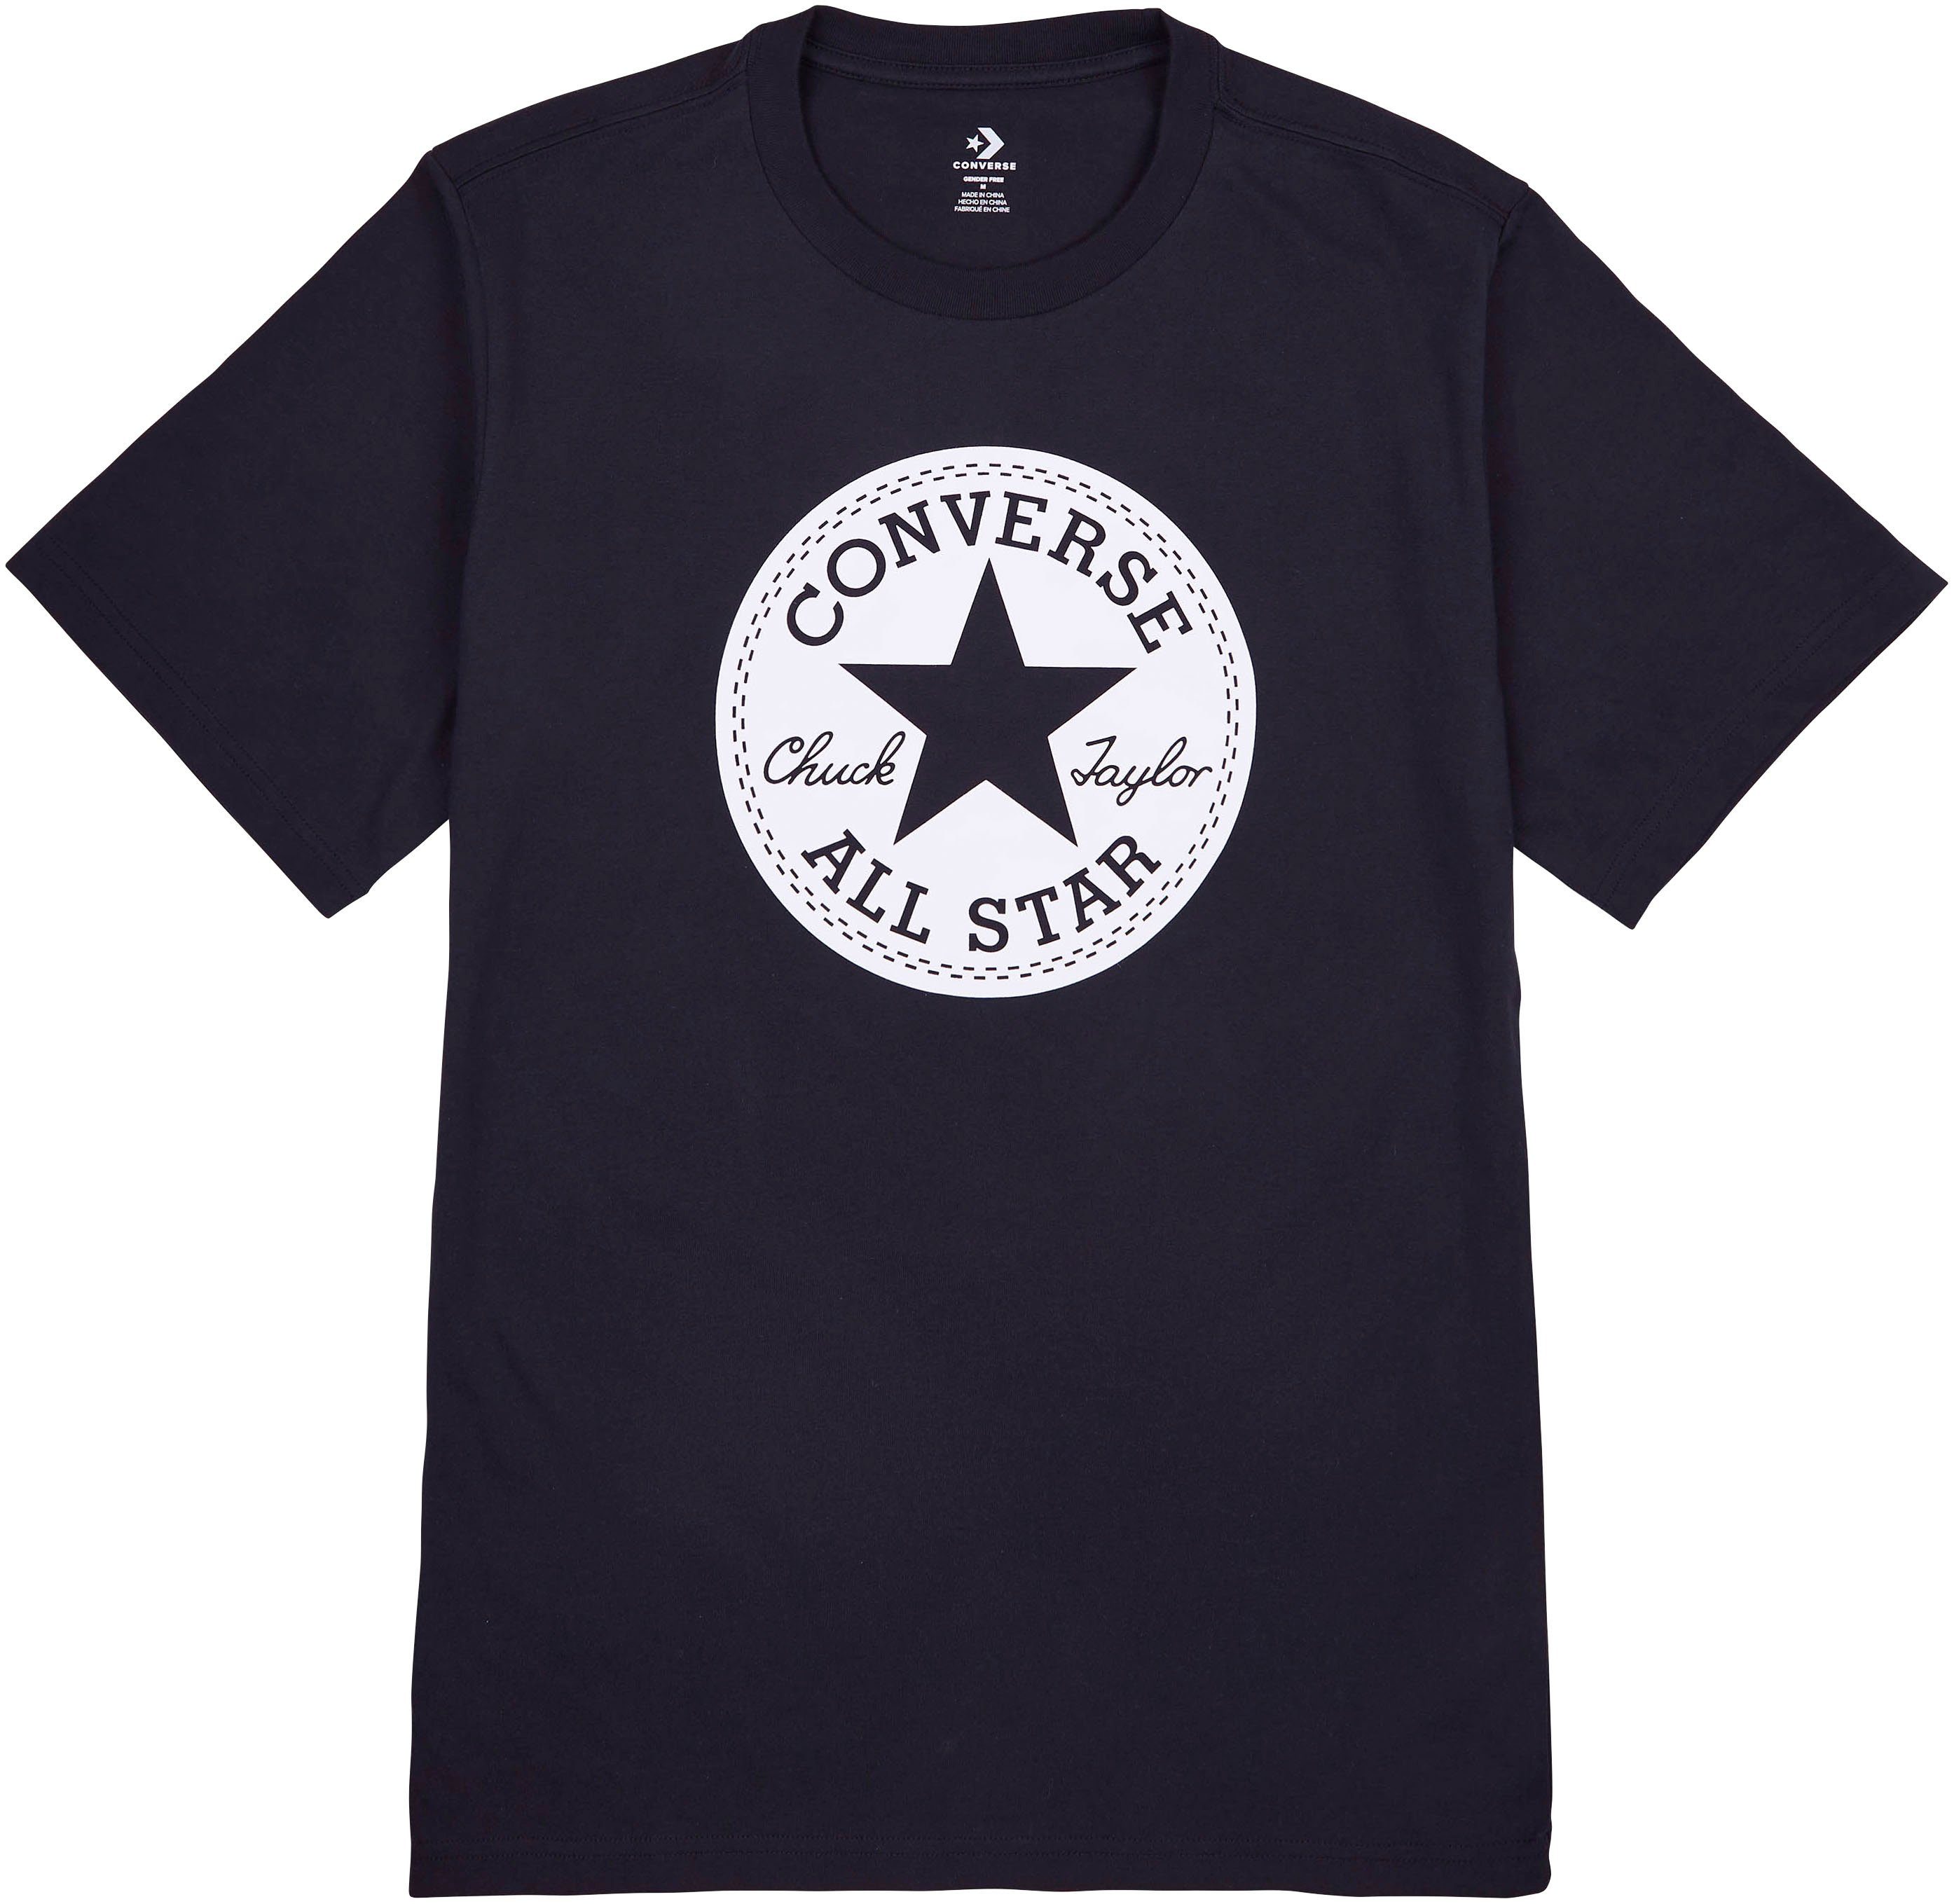 Converse Herren T-Shirts online kaufen | OTTO